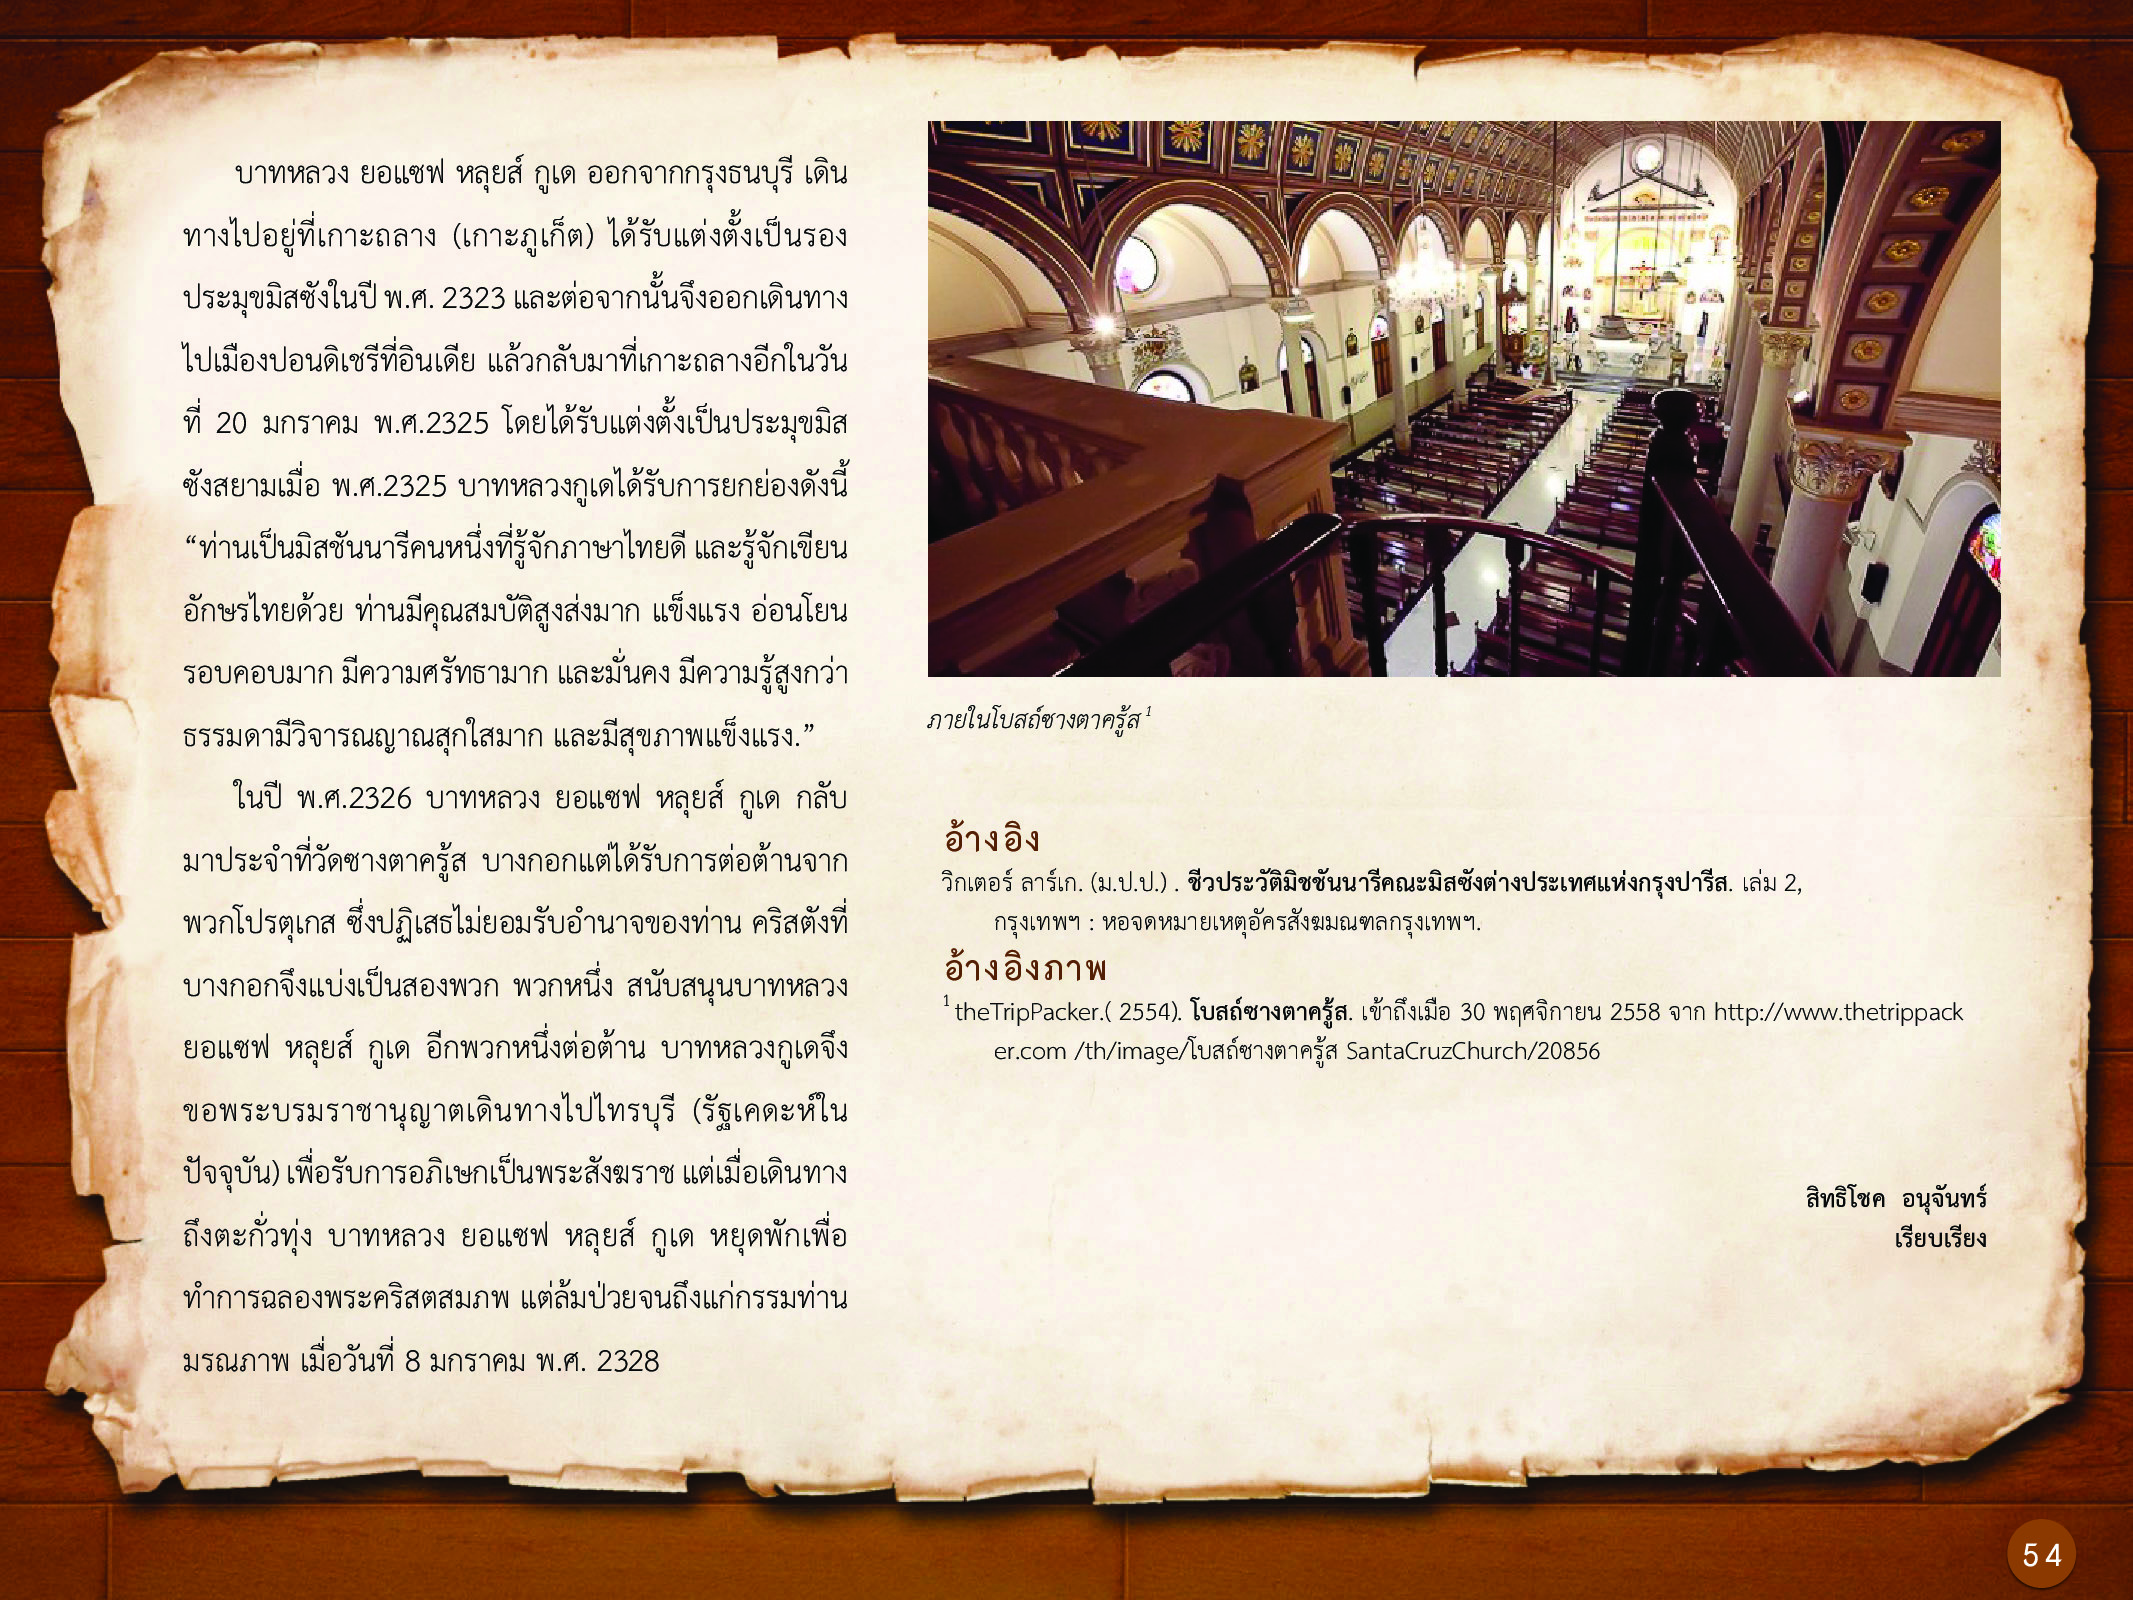 ประวัติศาสตร์กรุงธนบุรี ./images/history_dhonburi/54.jpg